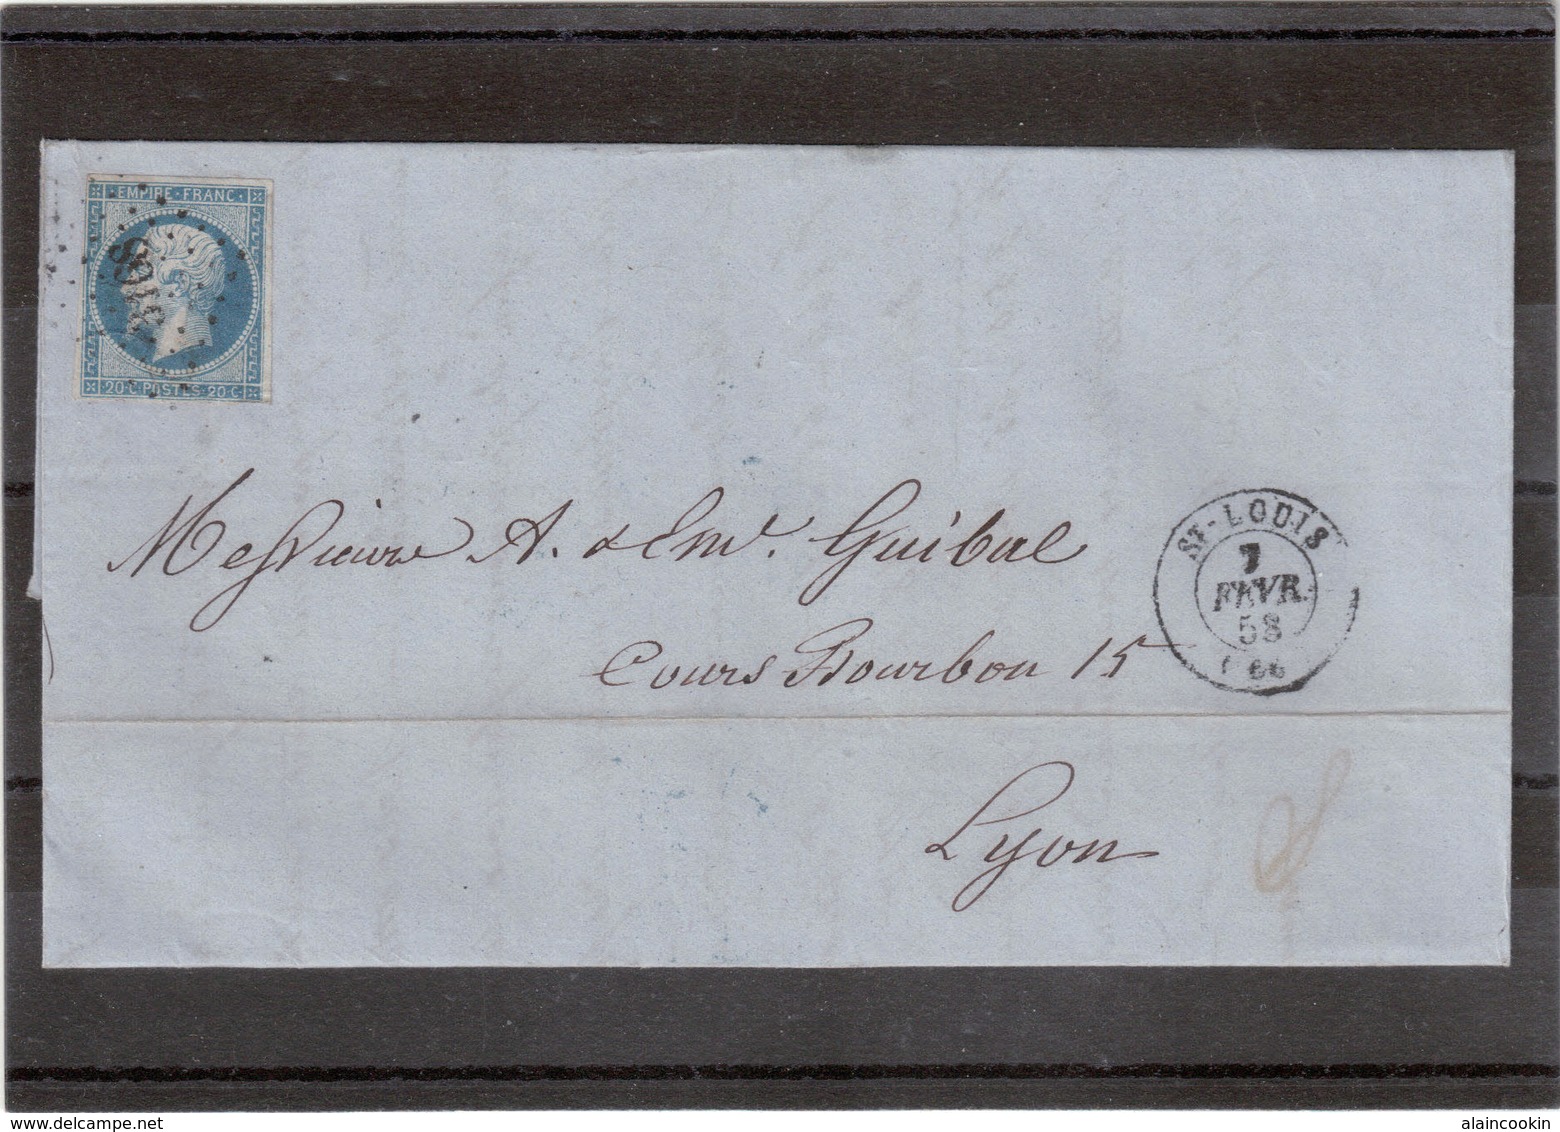 CP69 - Lettre Avec Yvert 14 Oblitéré " Petits Chiffres " 3168 De St Louis Du 7 FEVR 58 Pour Lyon. - 1862 Napoléon III